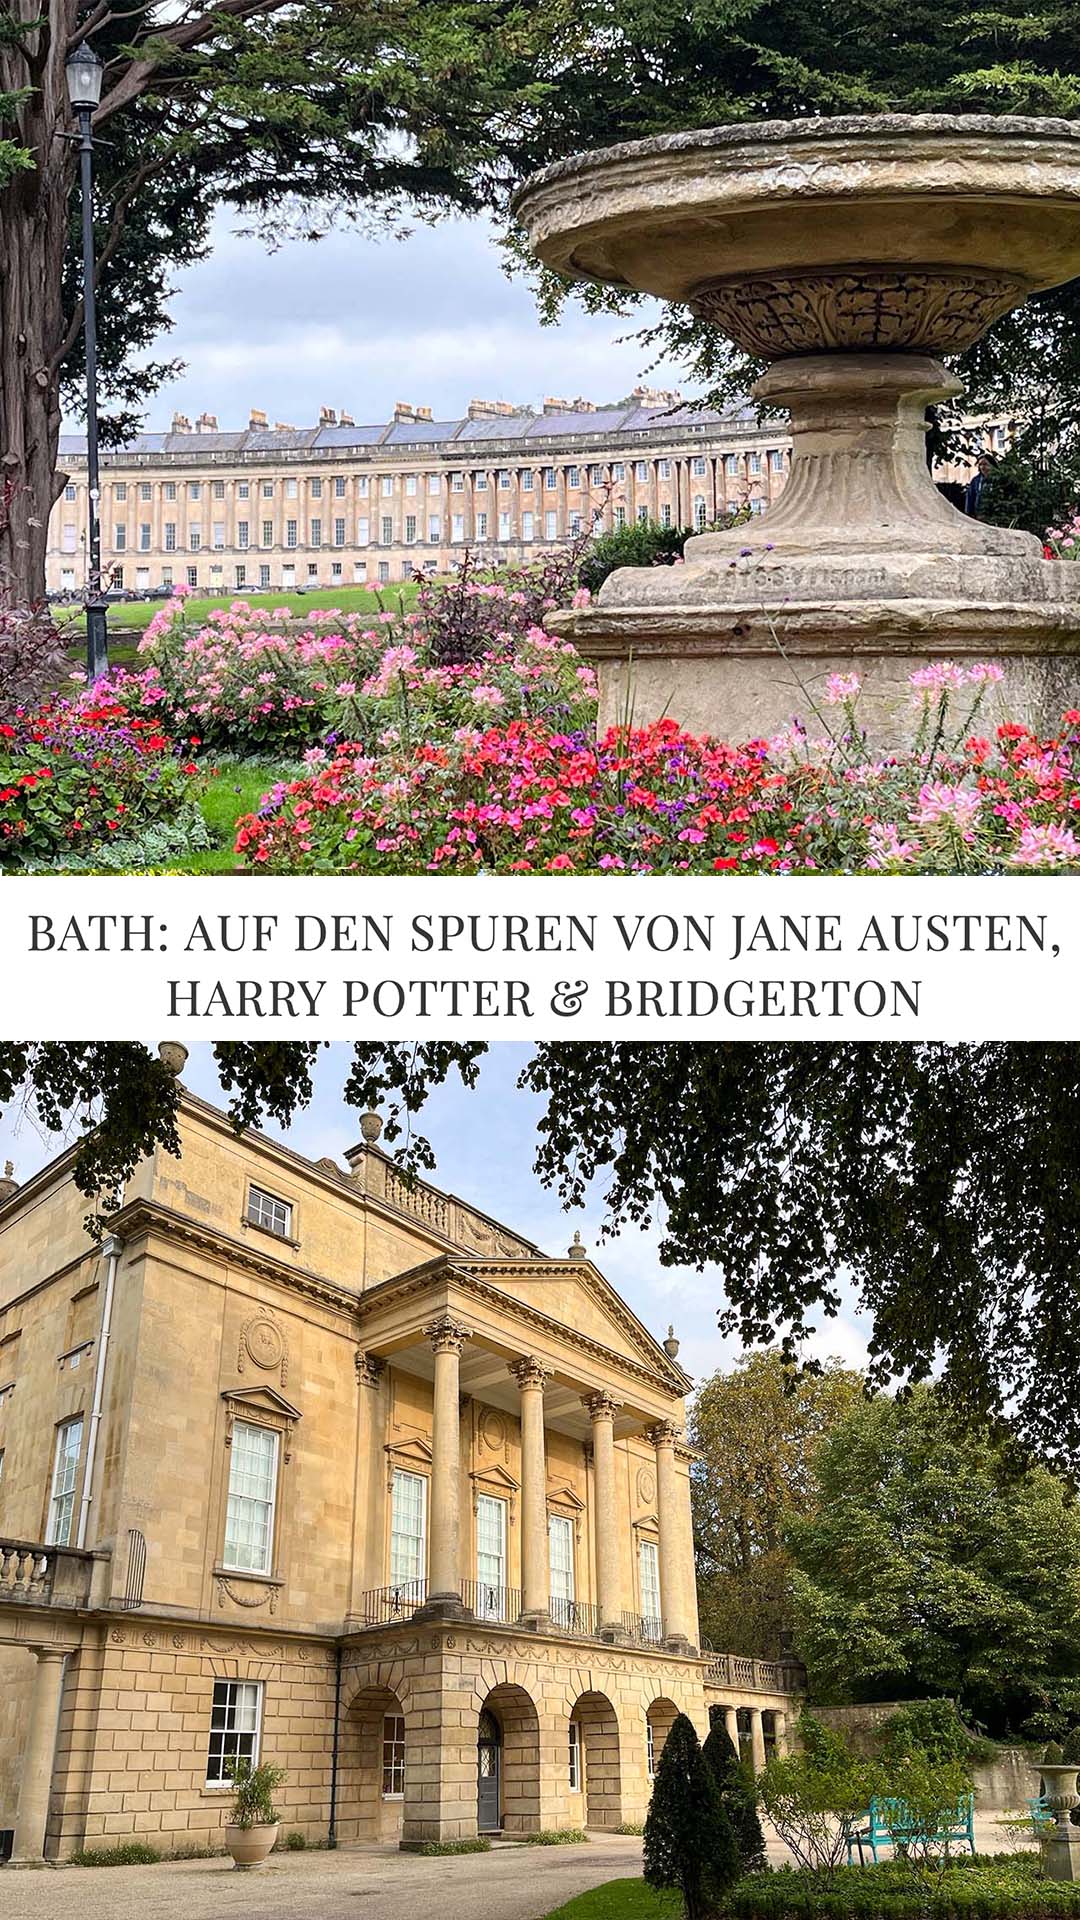 Bath: Auf den Spuren von Jane Austen